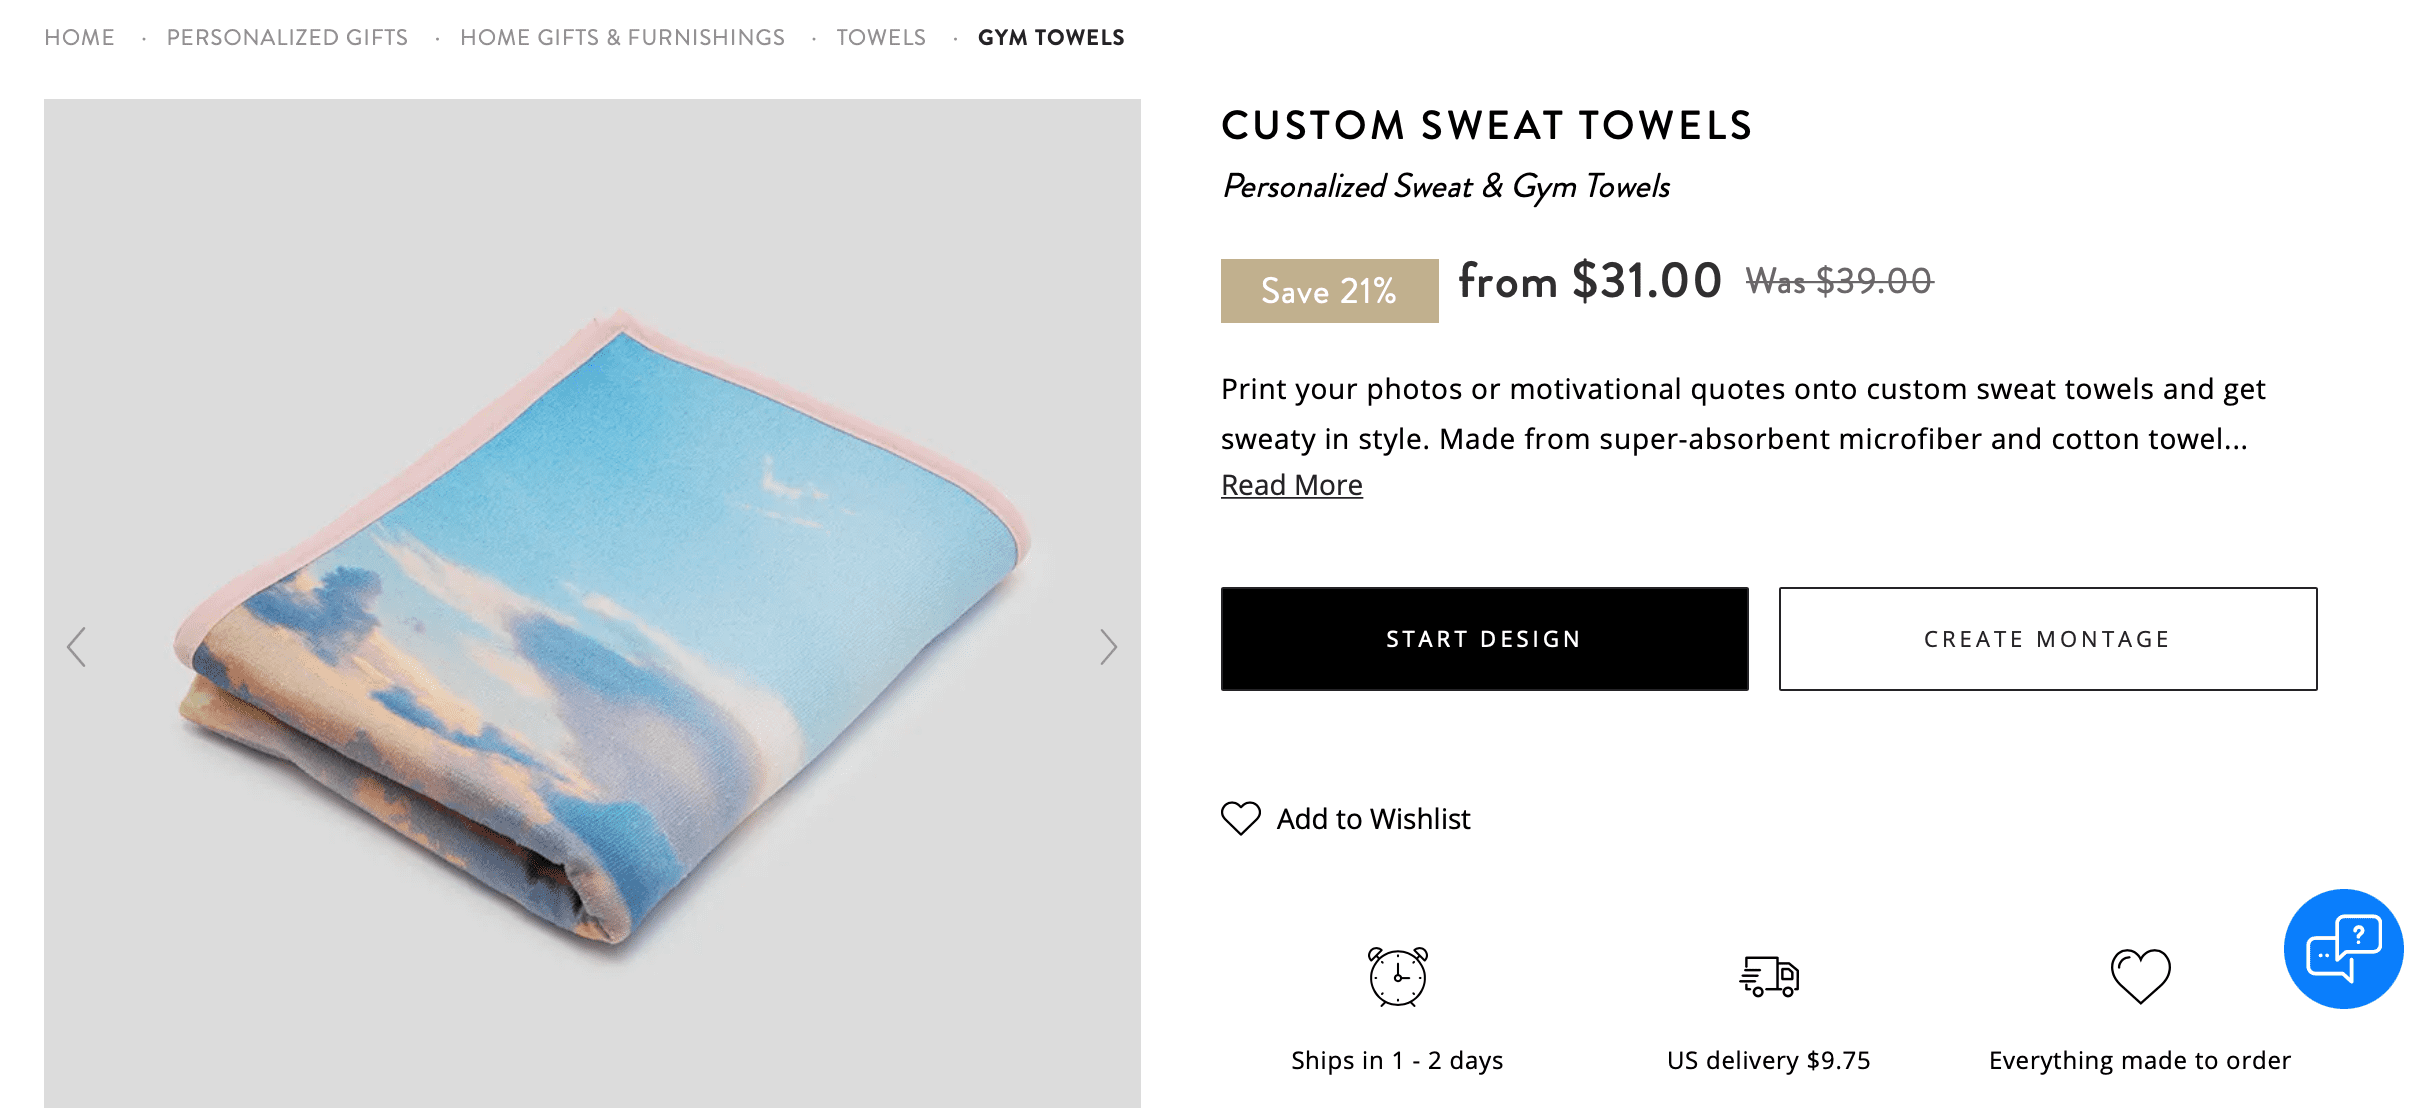 Custom Sweat Towels